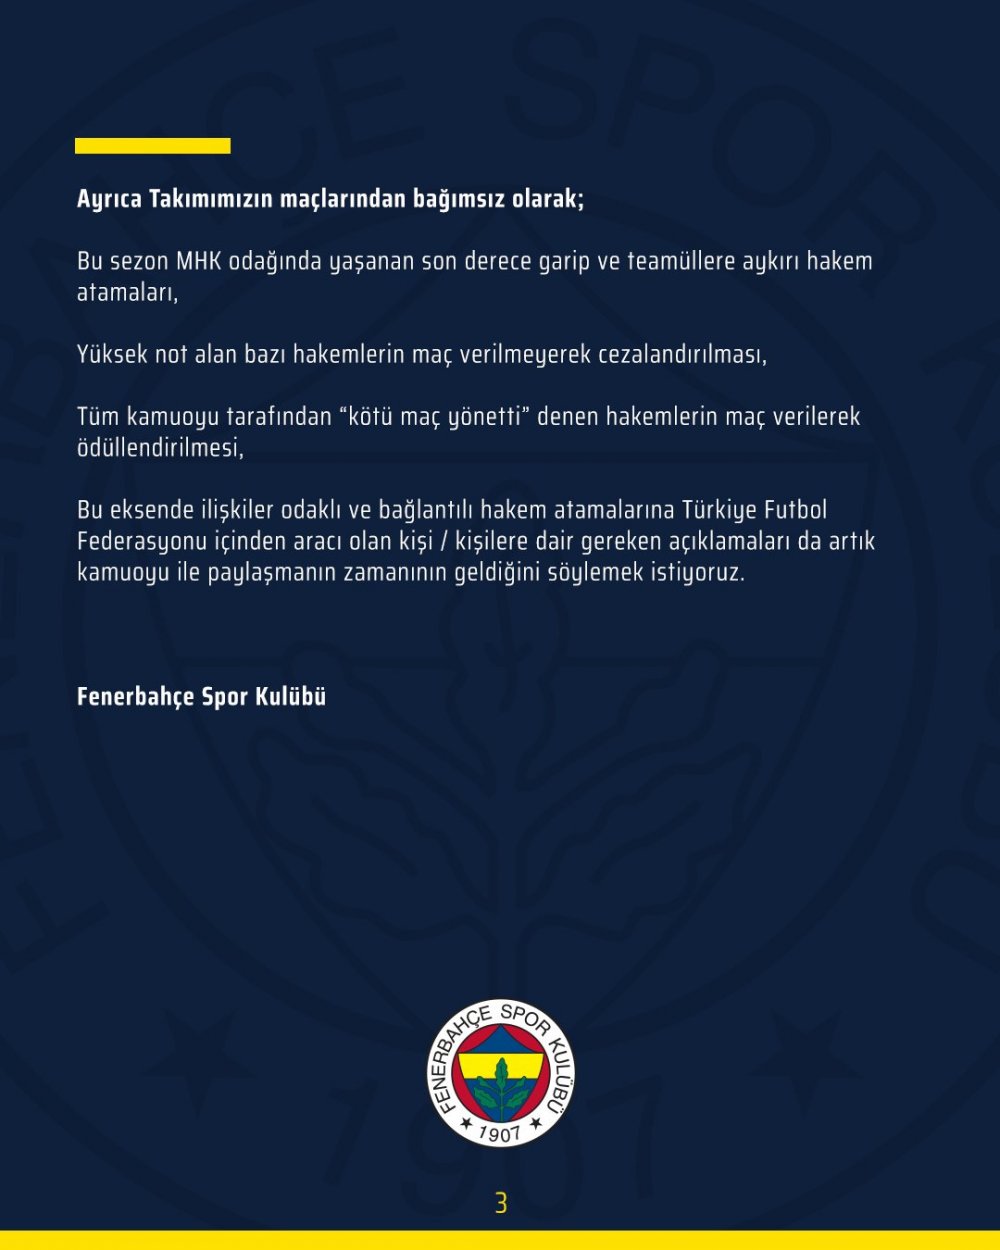 Fenerbahçe yine şaşırtmadı! Trabzonspor maçı öncesi hakem açıklaması